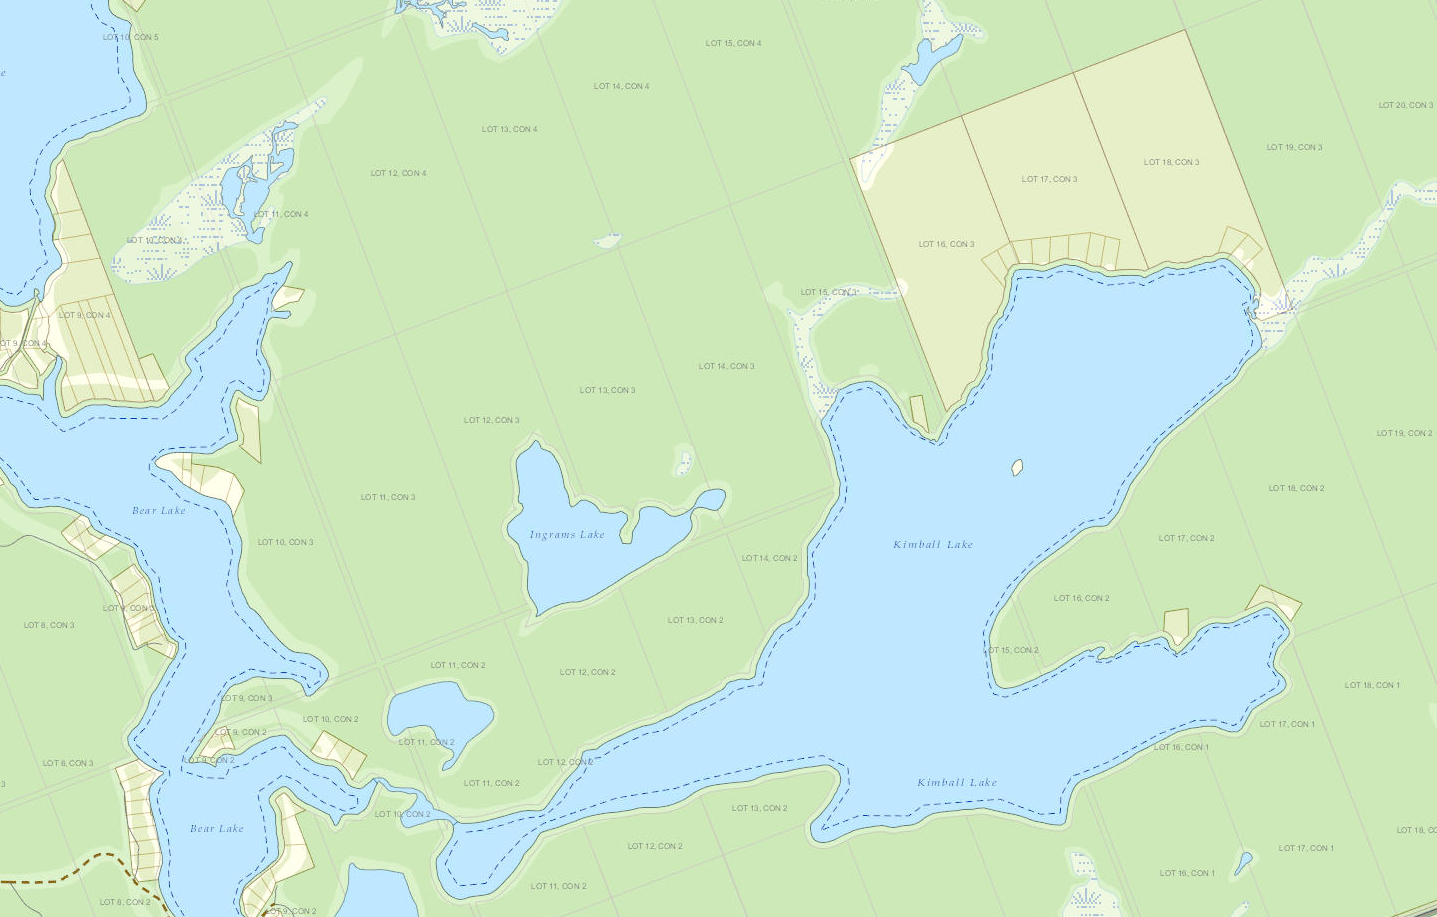 Kimball Lake Cadastral Map - Kimball Lake - Muskoka